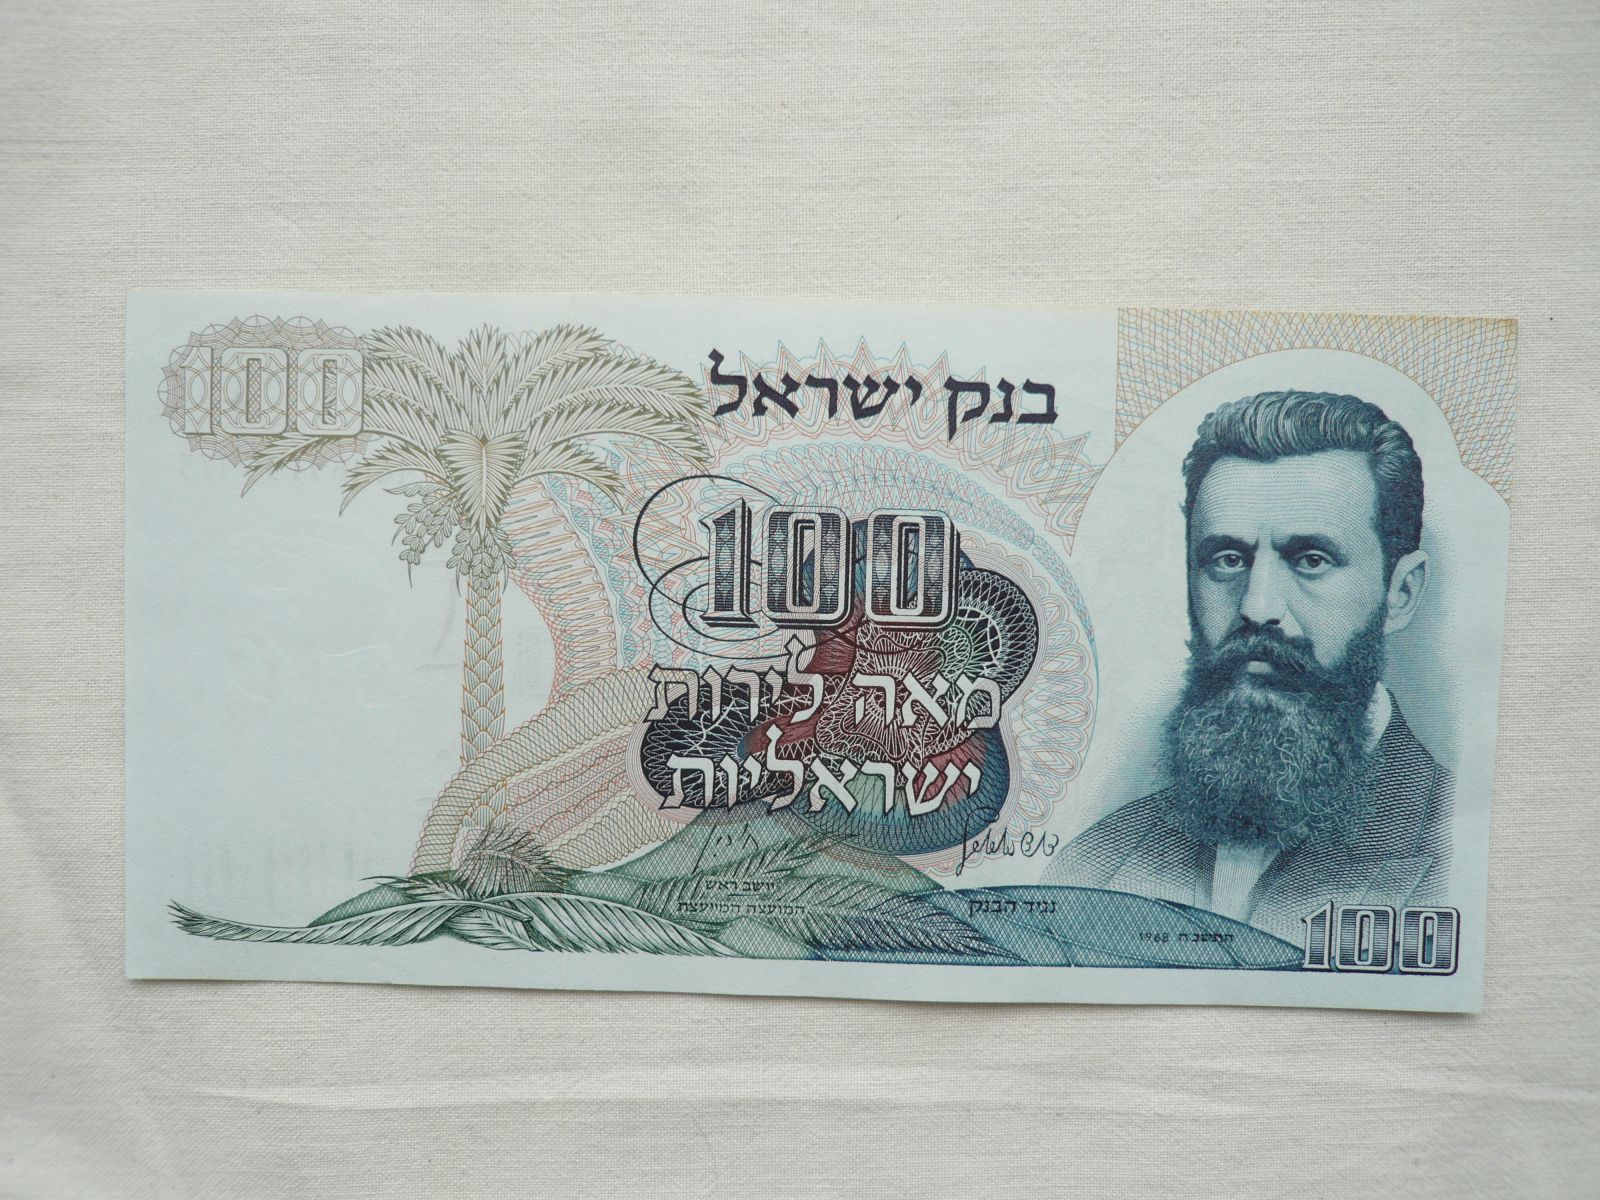 100 Lirot, 1968, Izrael